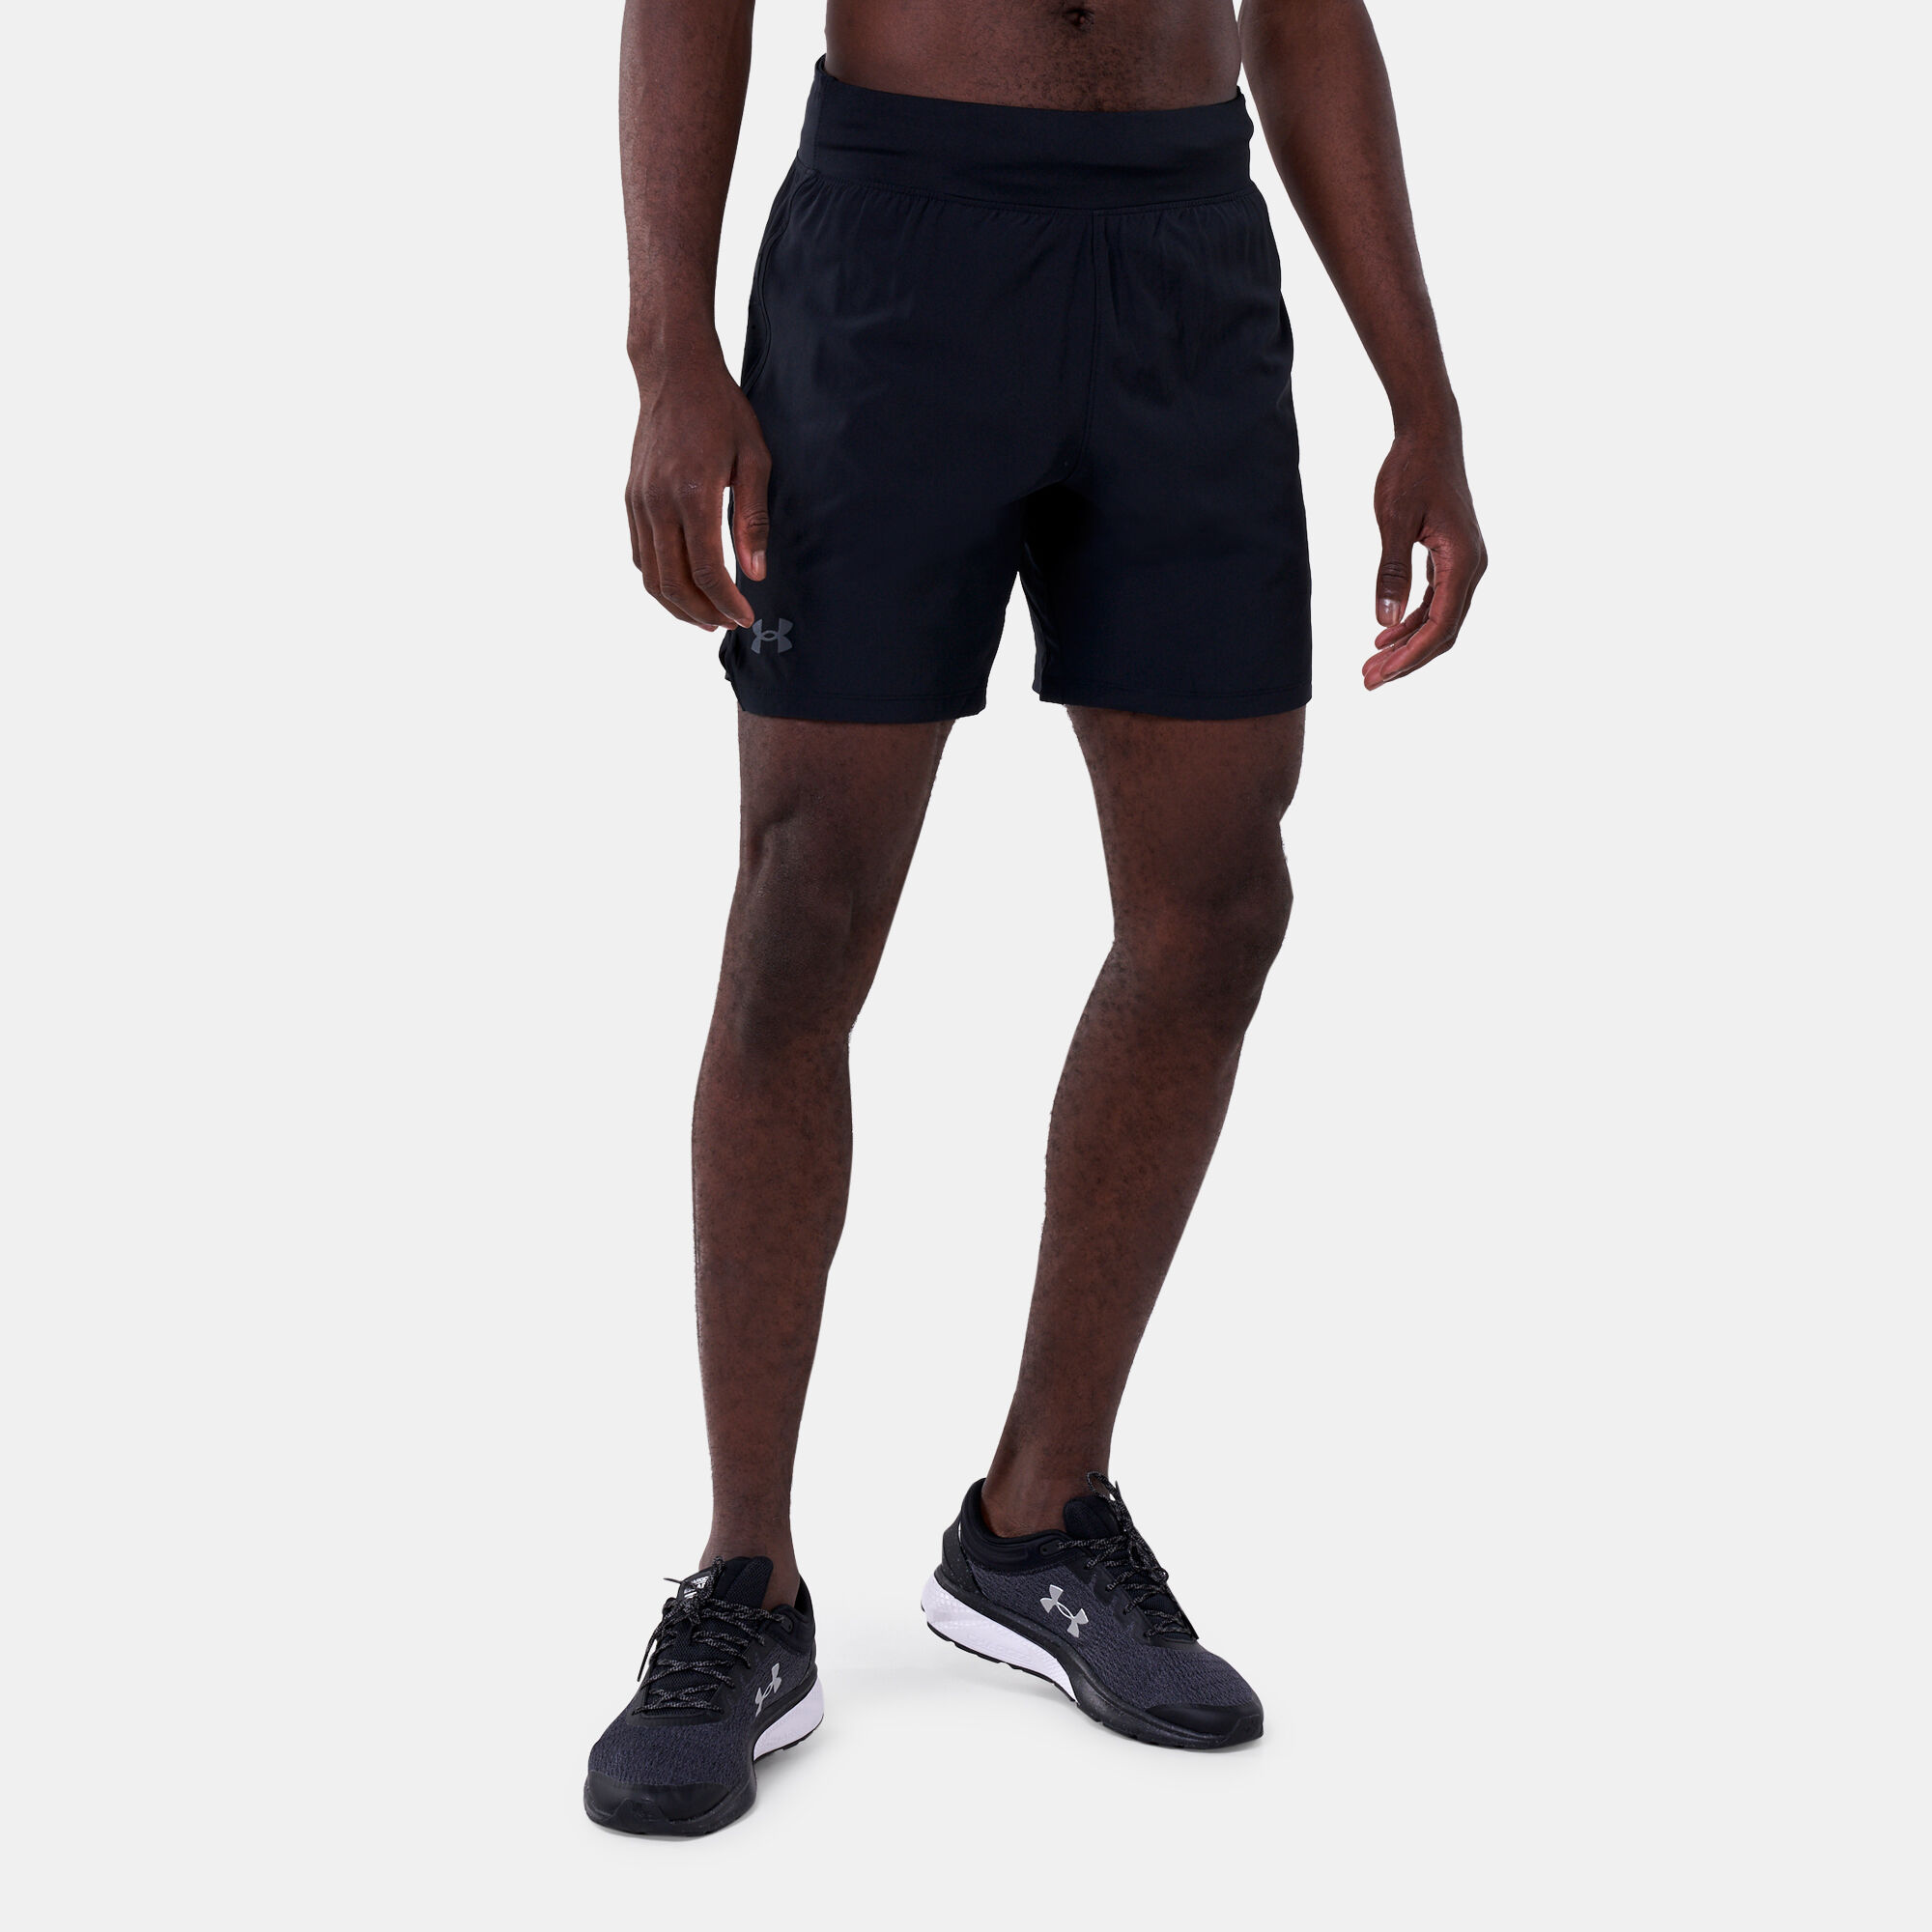 Under Armour Speedpocket Shorts Black - $30 (40% Off Retail) New